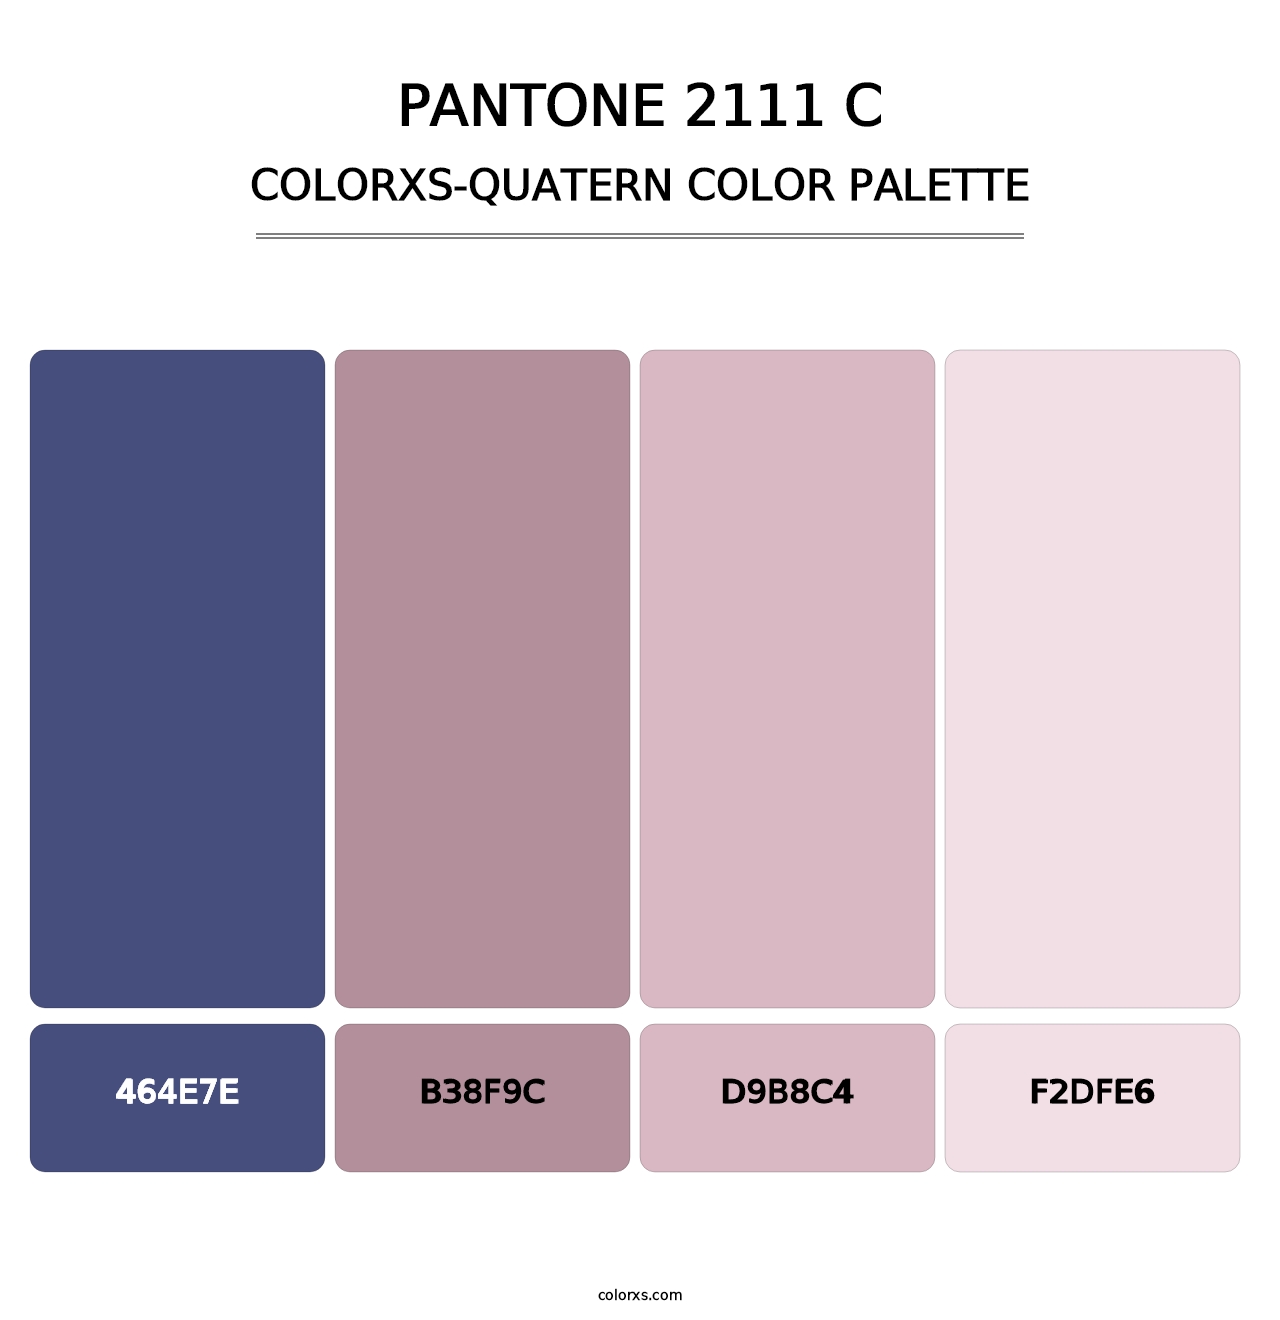 PANTONE 2111 C - Colorxs Quatern Palette